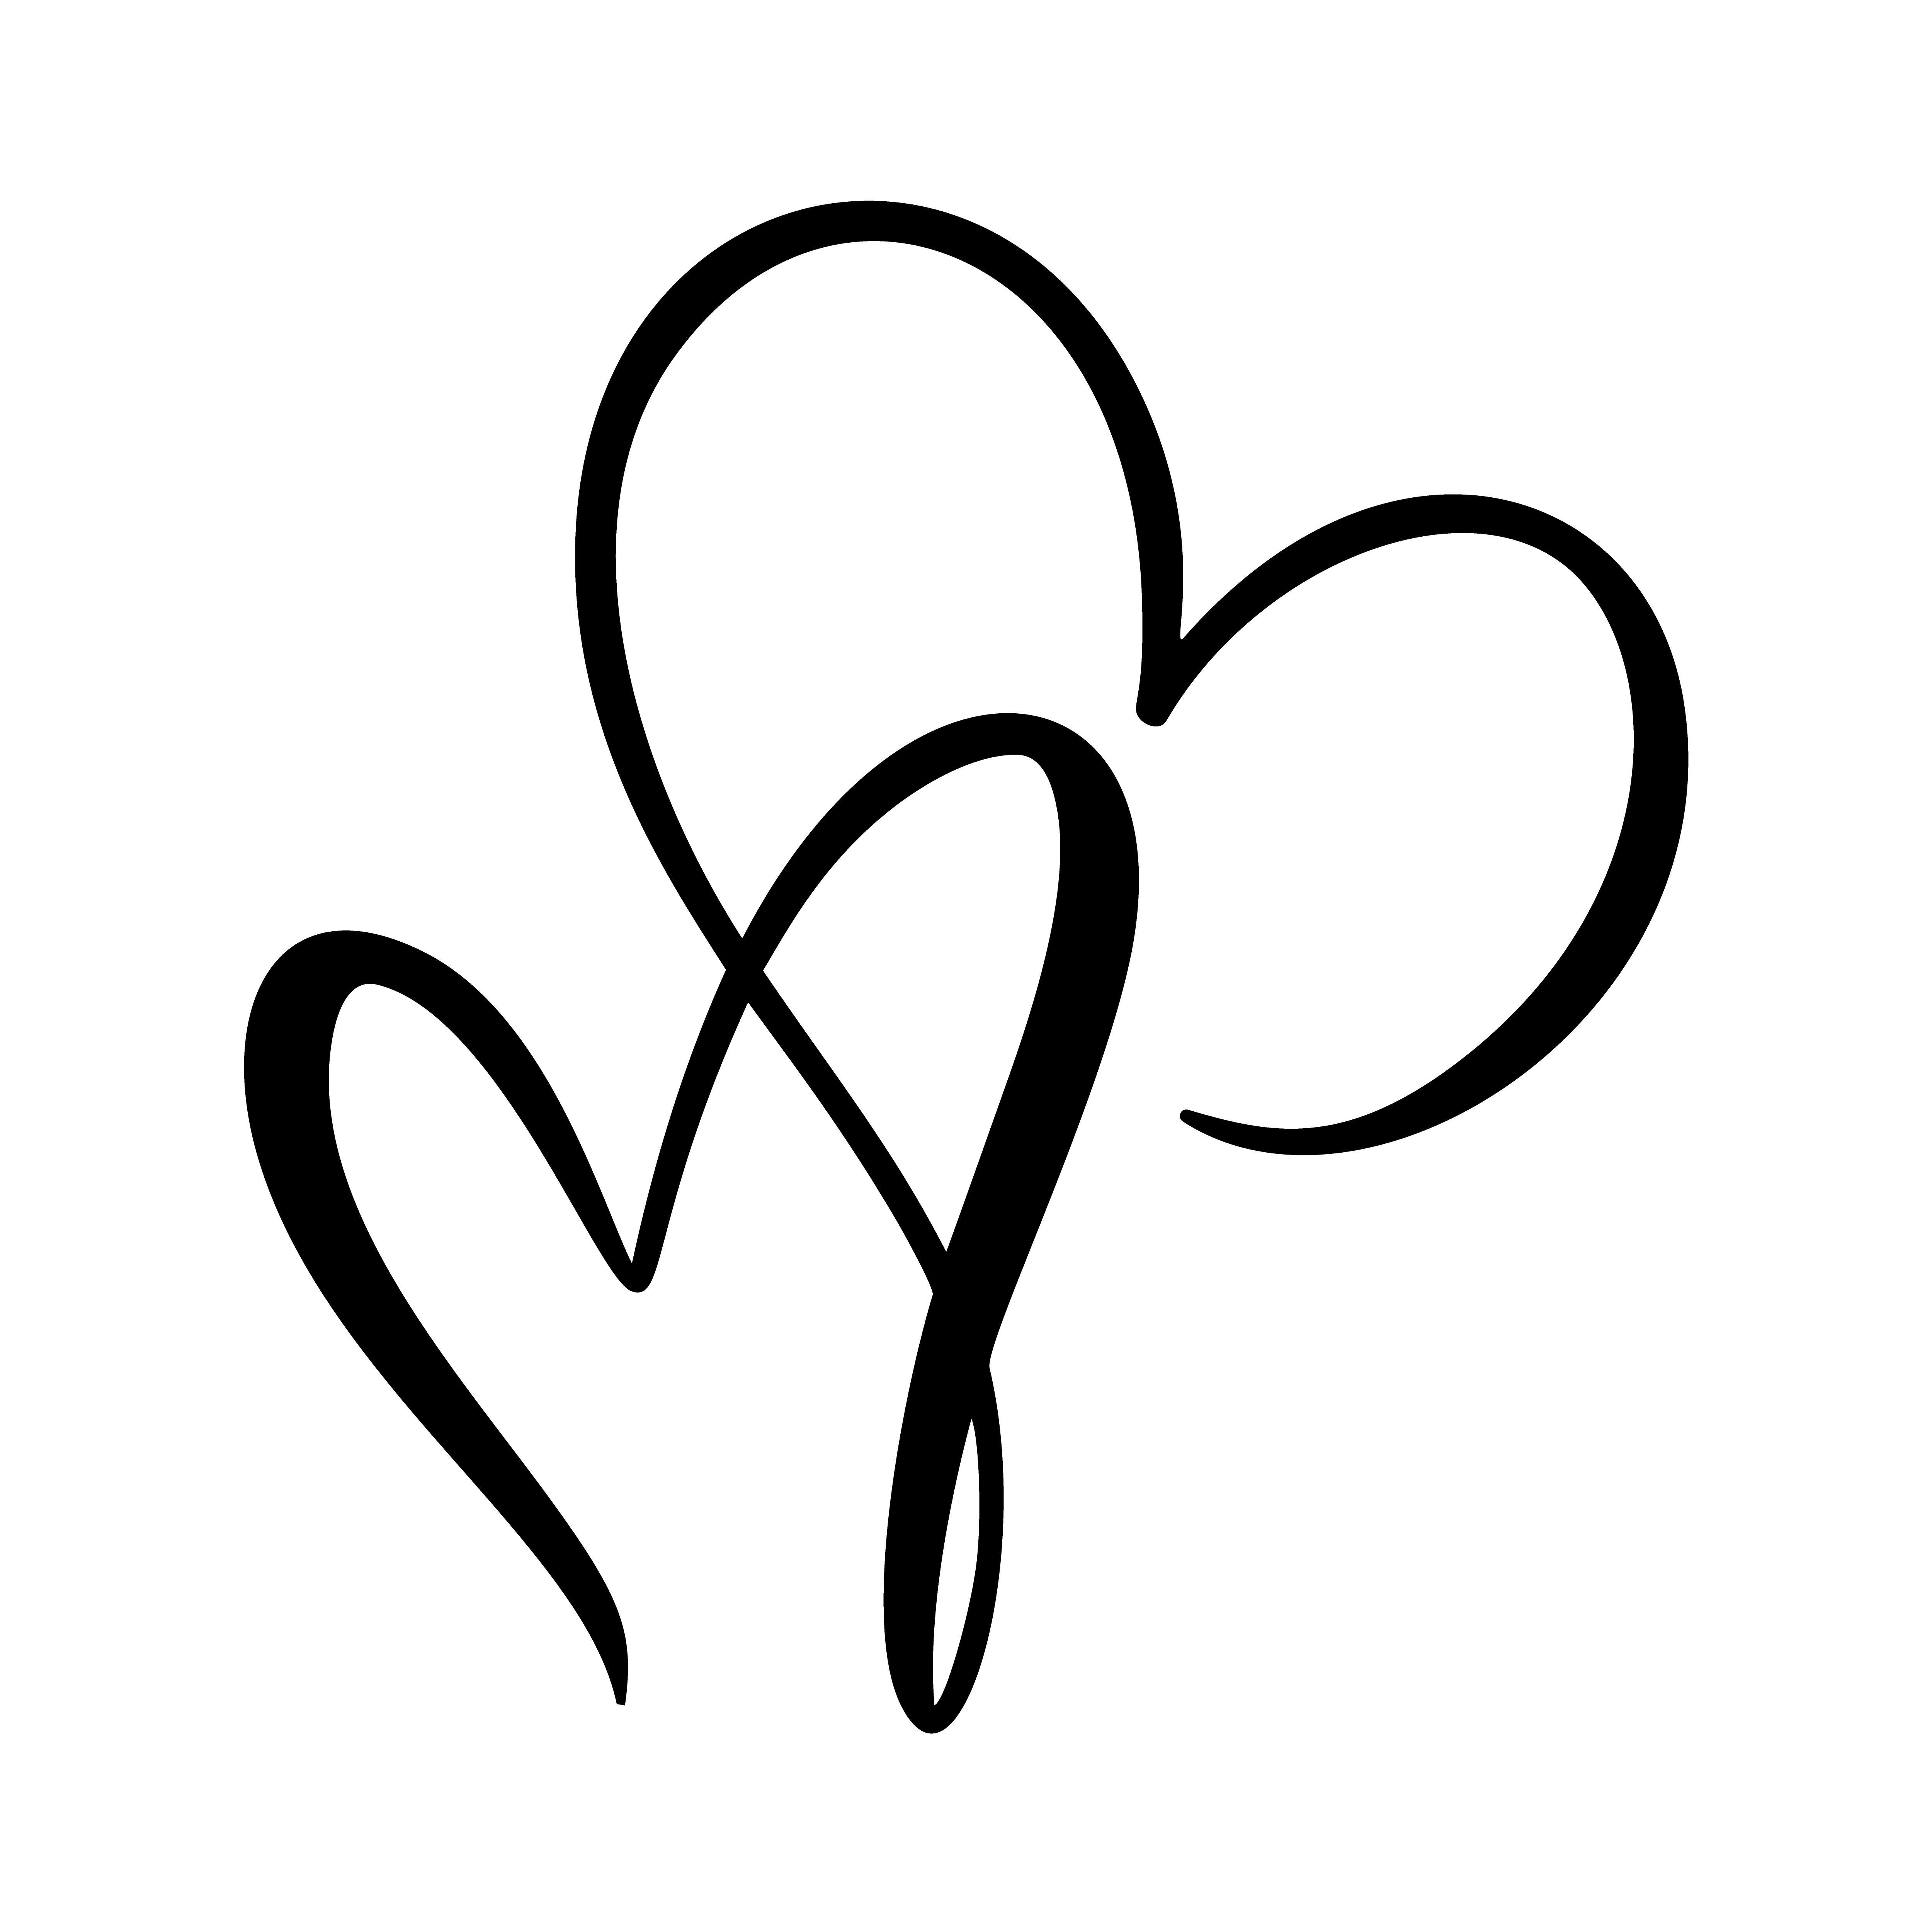 Download Calligraphic love heart sign 374632 Vector Art at Vecteezy